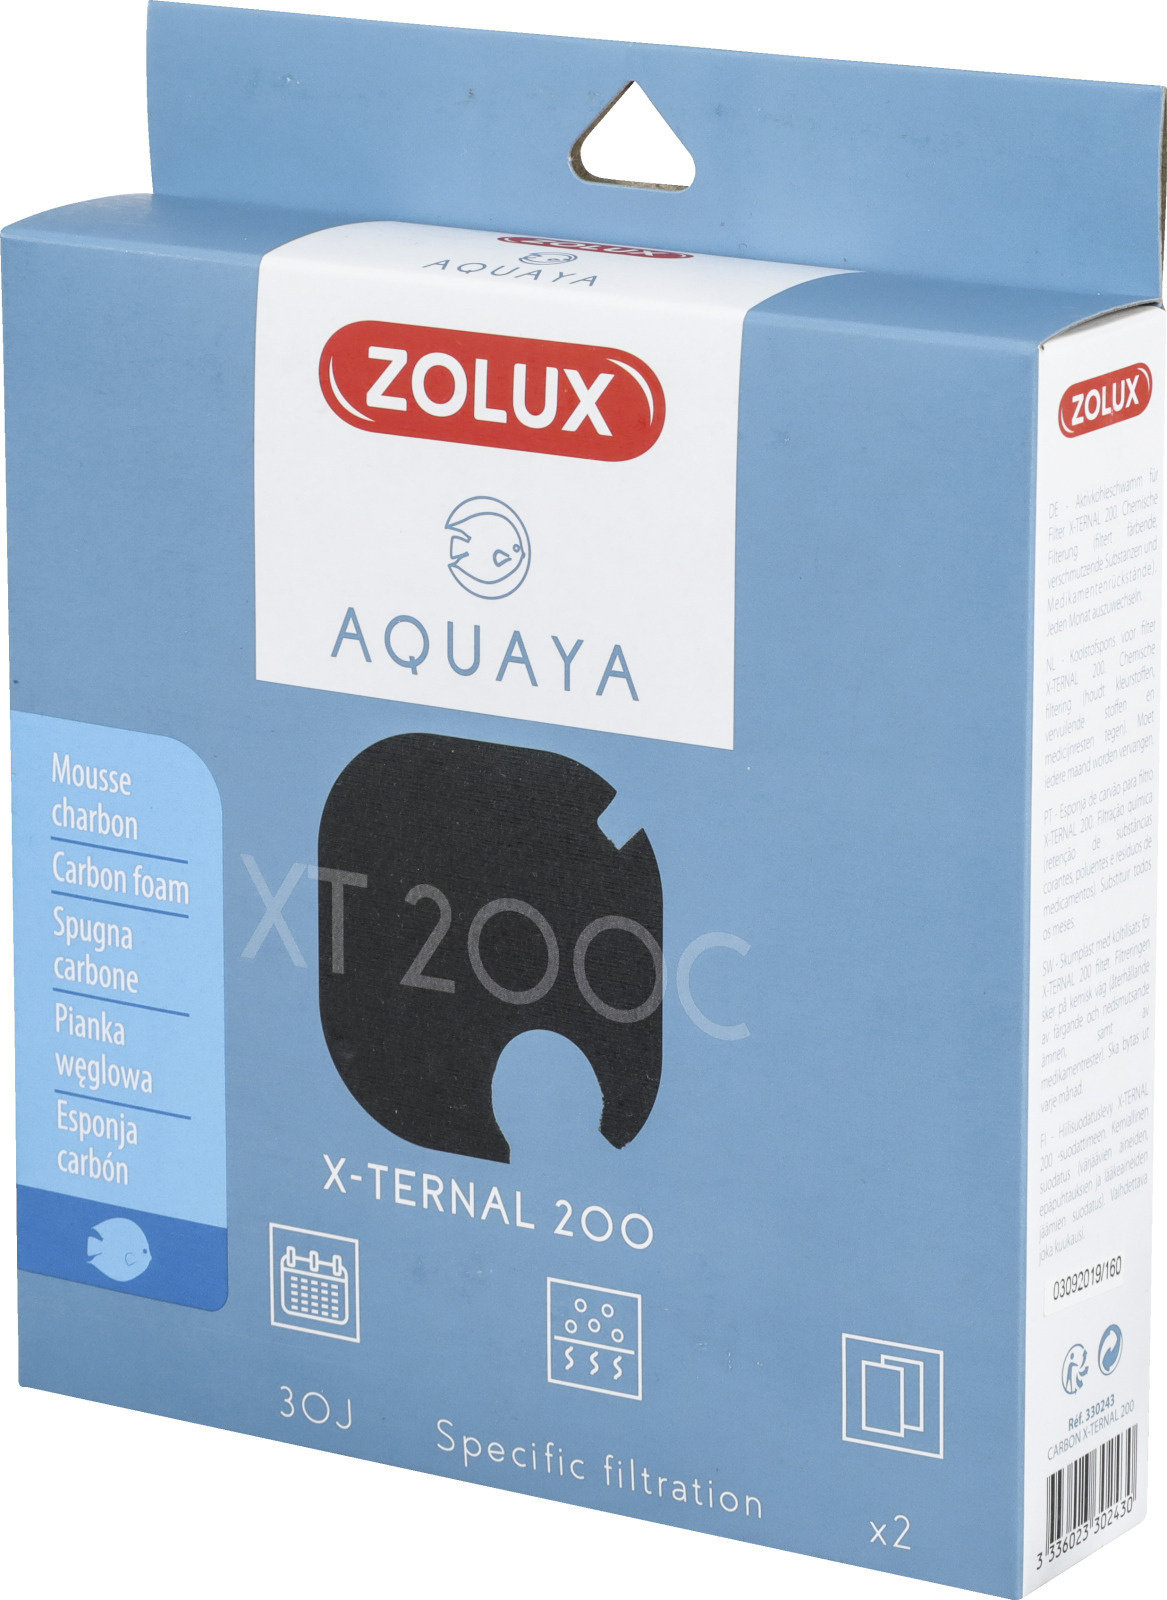 ZOLUX Aquaya Carbon XT 200C lot de 2 mousses au charbon actif pour filtre externe Xternal 200